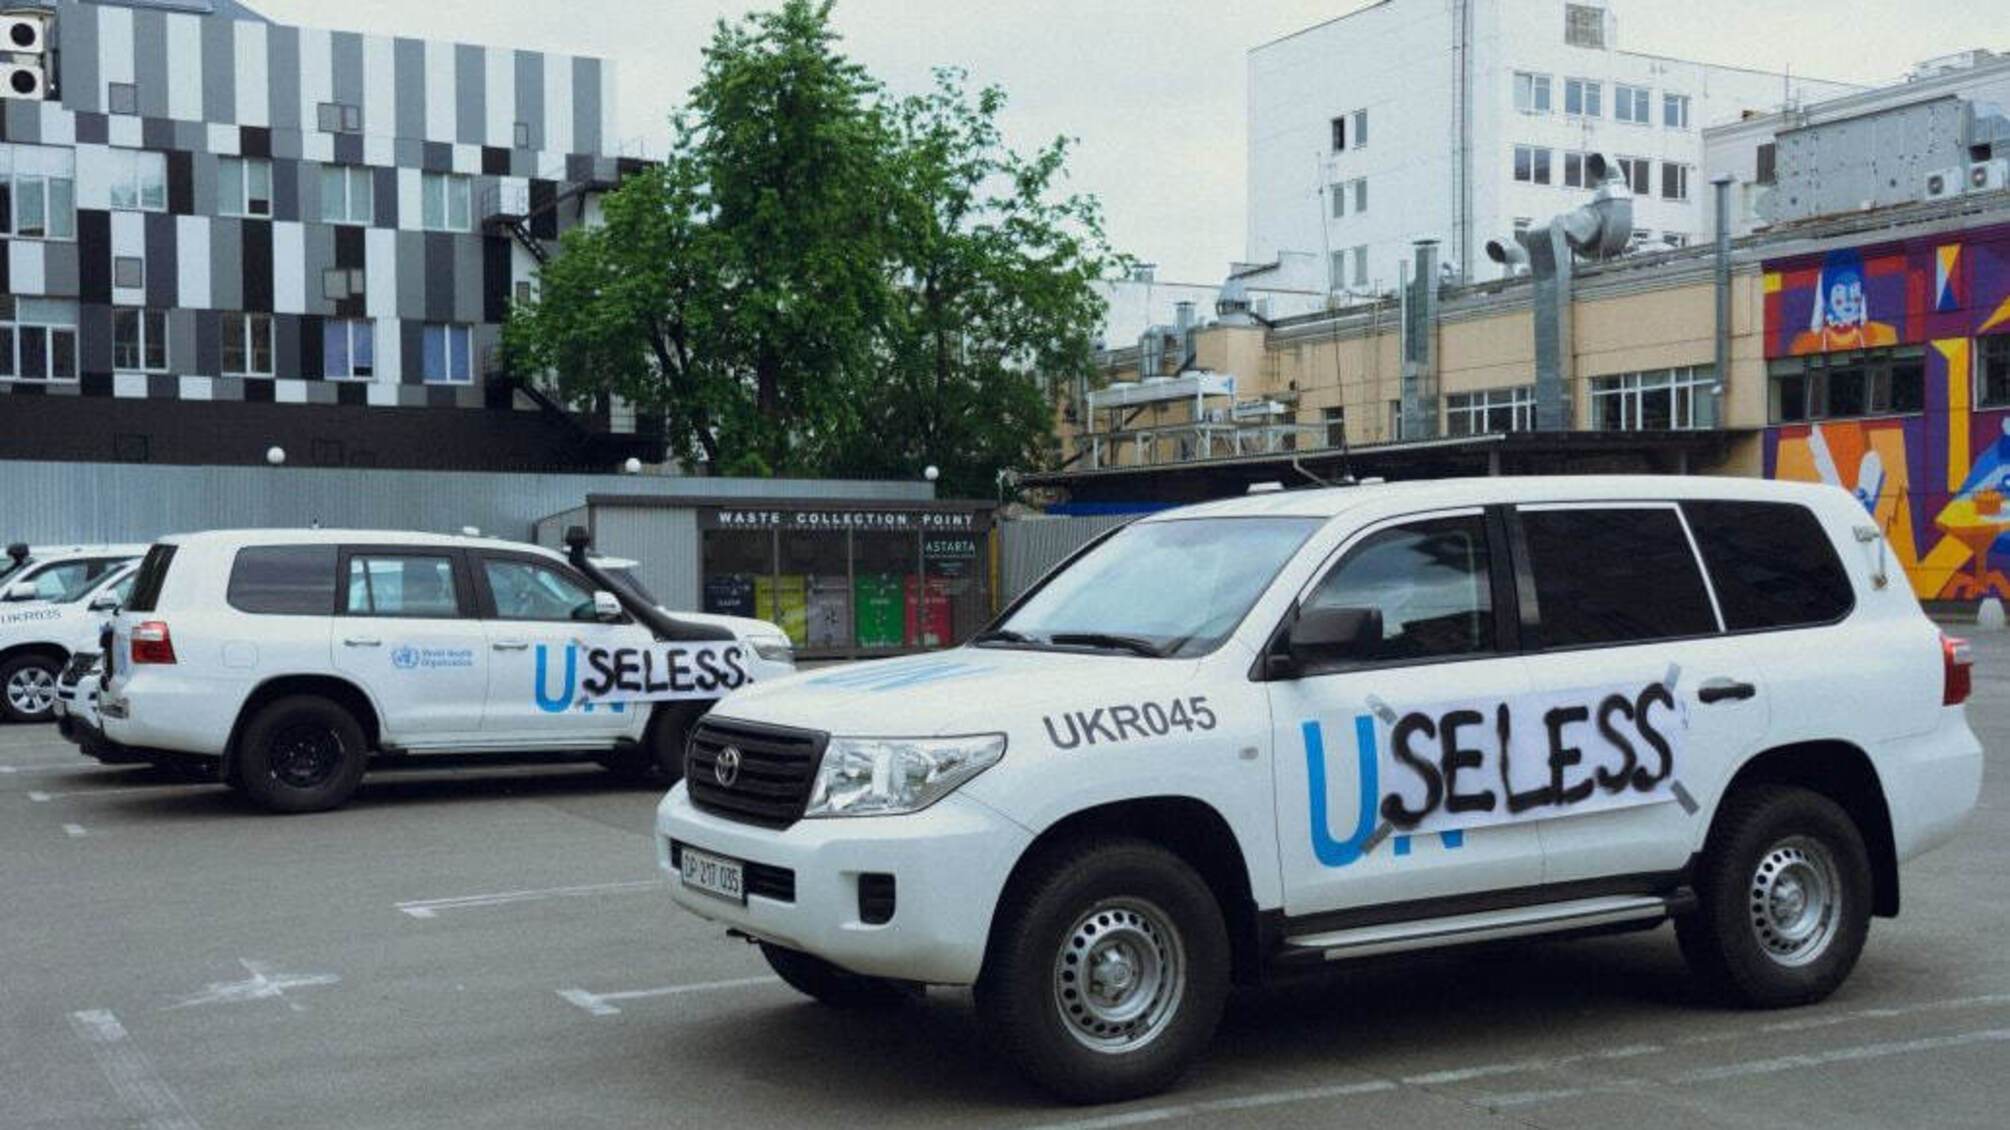 Useless: активиста, дополнившего надпись на автомобилях ООН, вызвали в суд